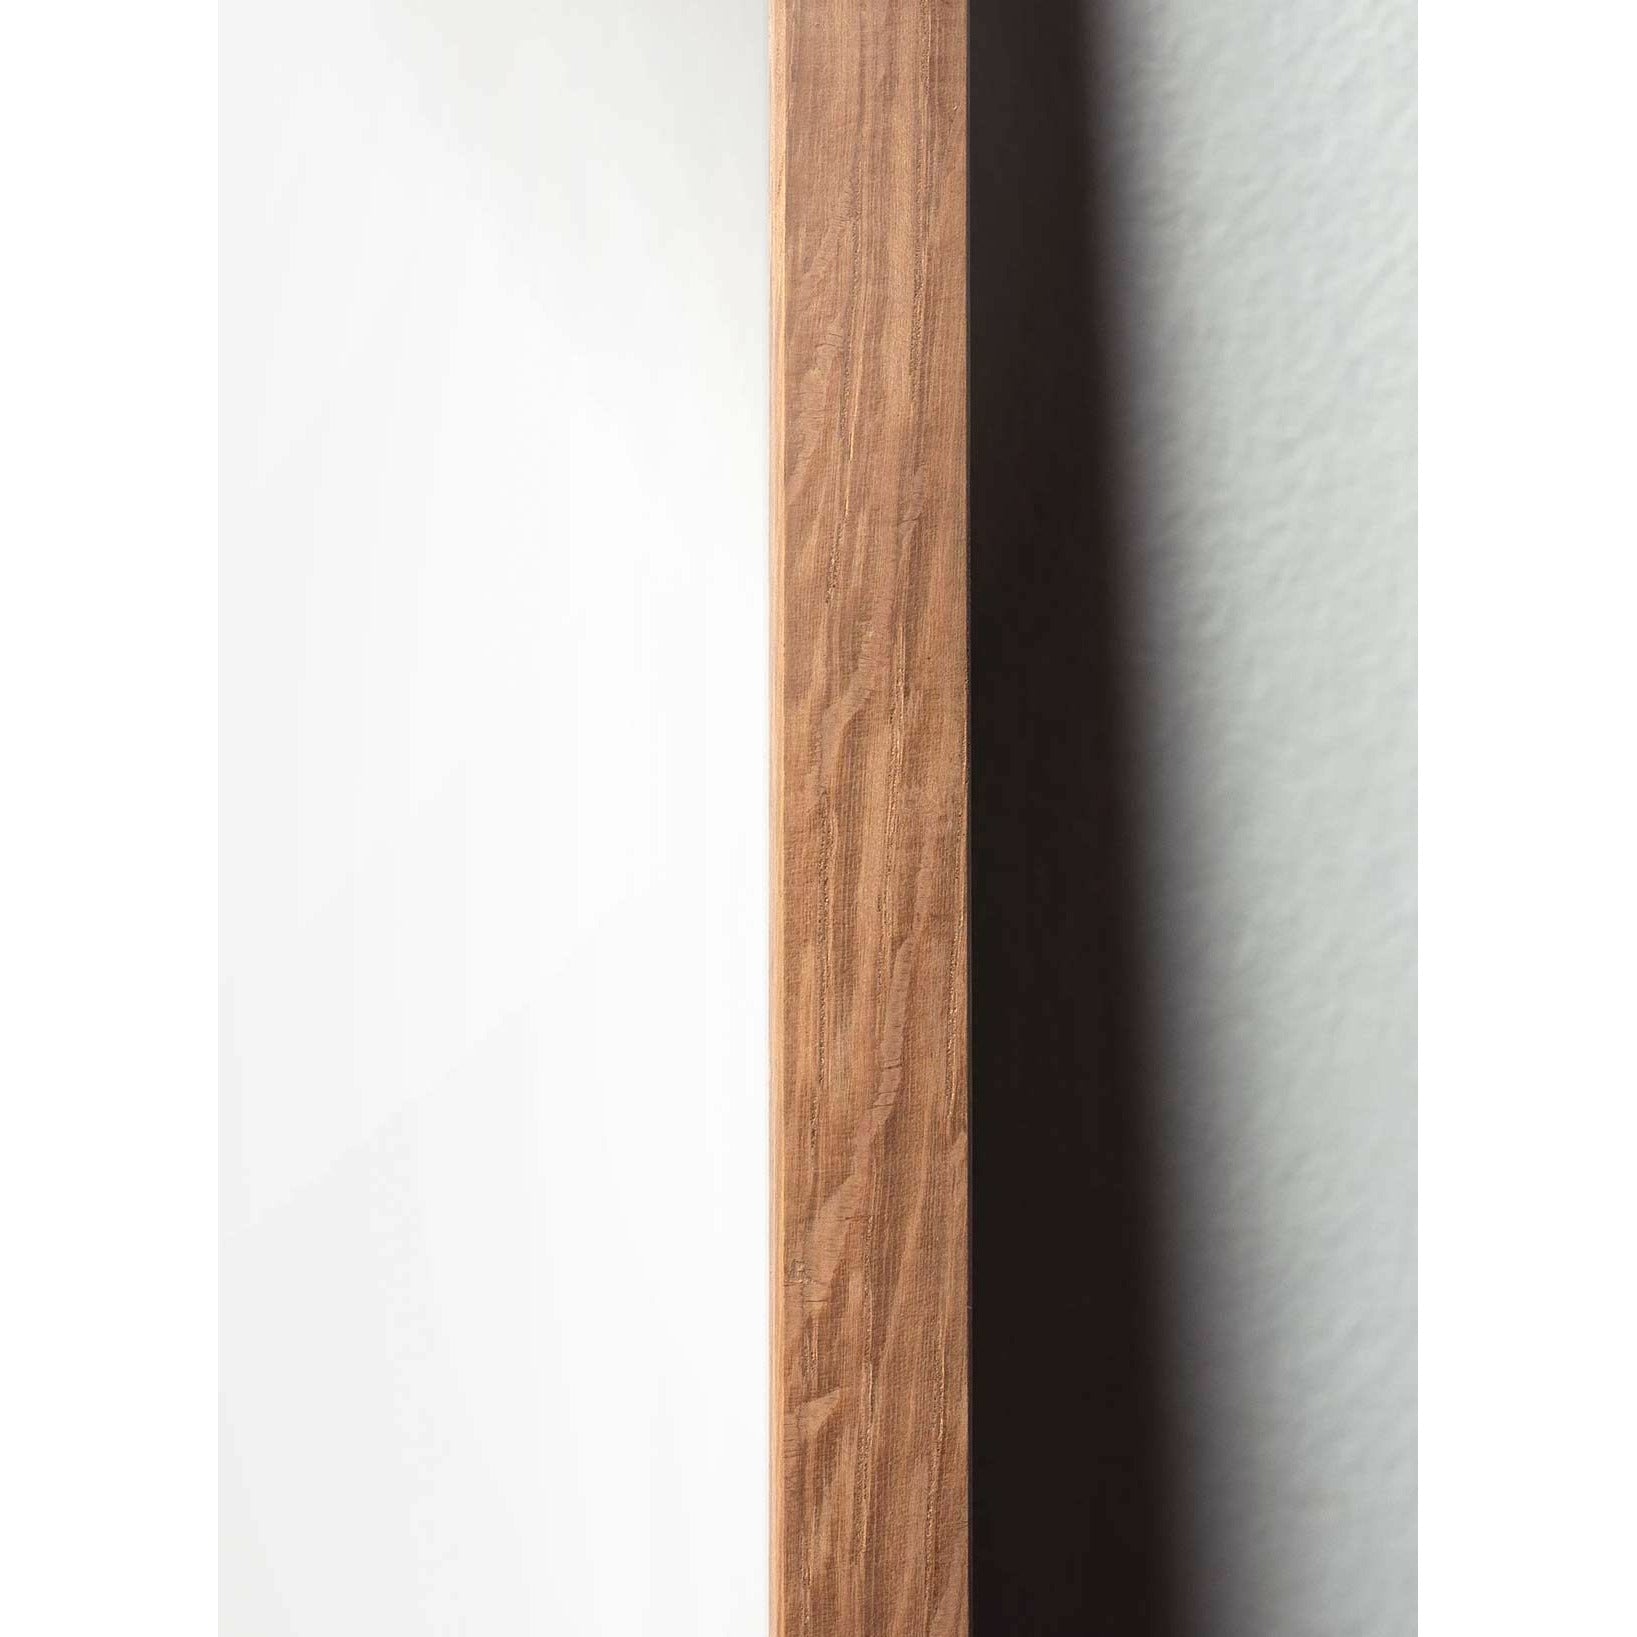 Póster clásico de BrainChild Drop, marco hecho de madera clara 50x70 cm, fondo de color arena